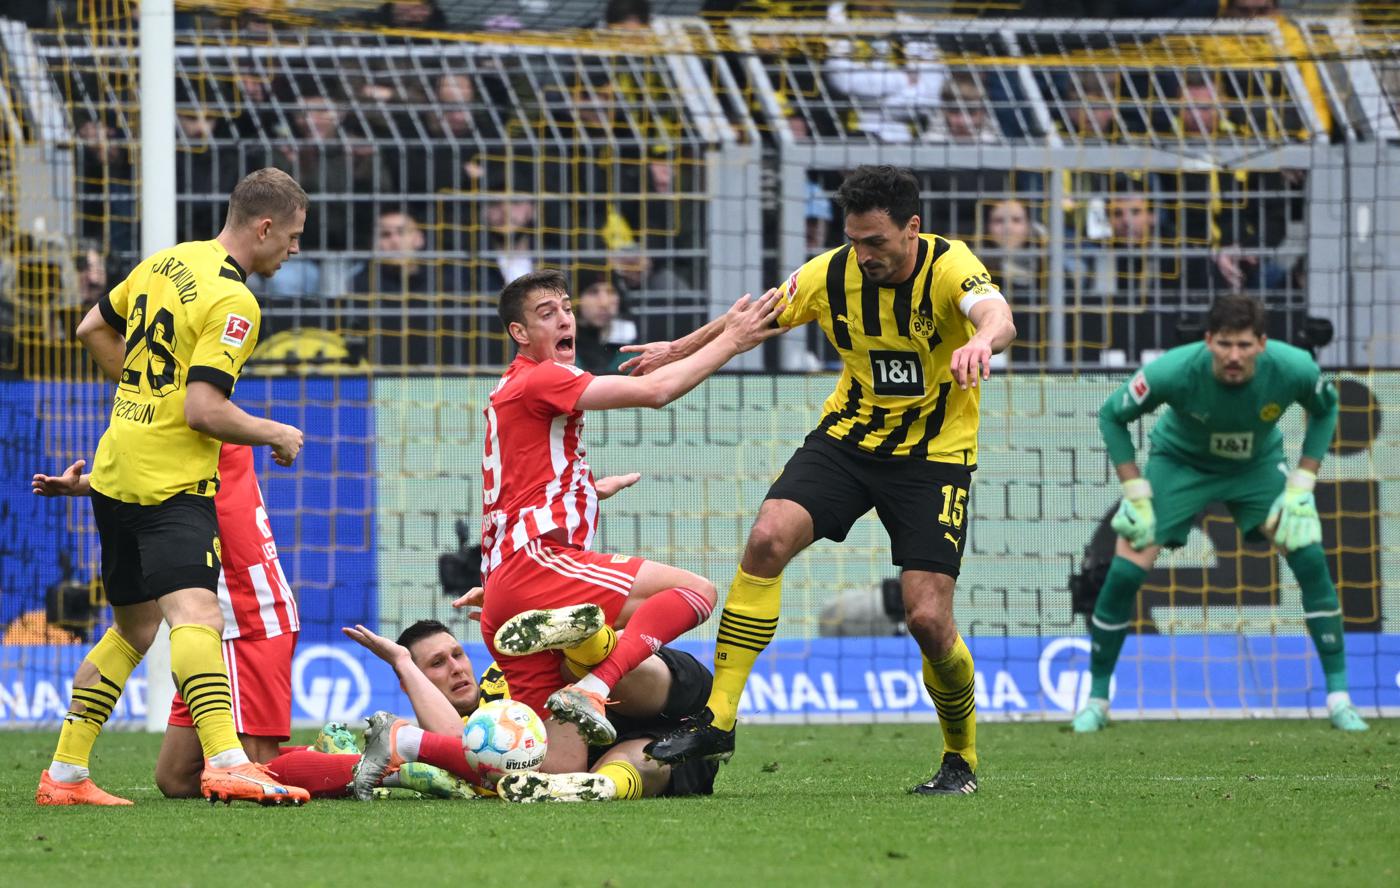 Borussia D v Union - 2-1. Niemiecka ekstraklasa, runda 27. Przegląd meczu, statystyki.